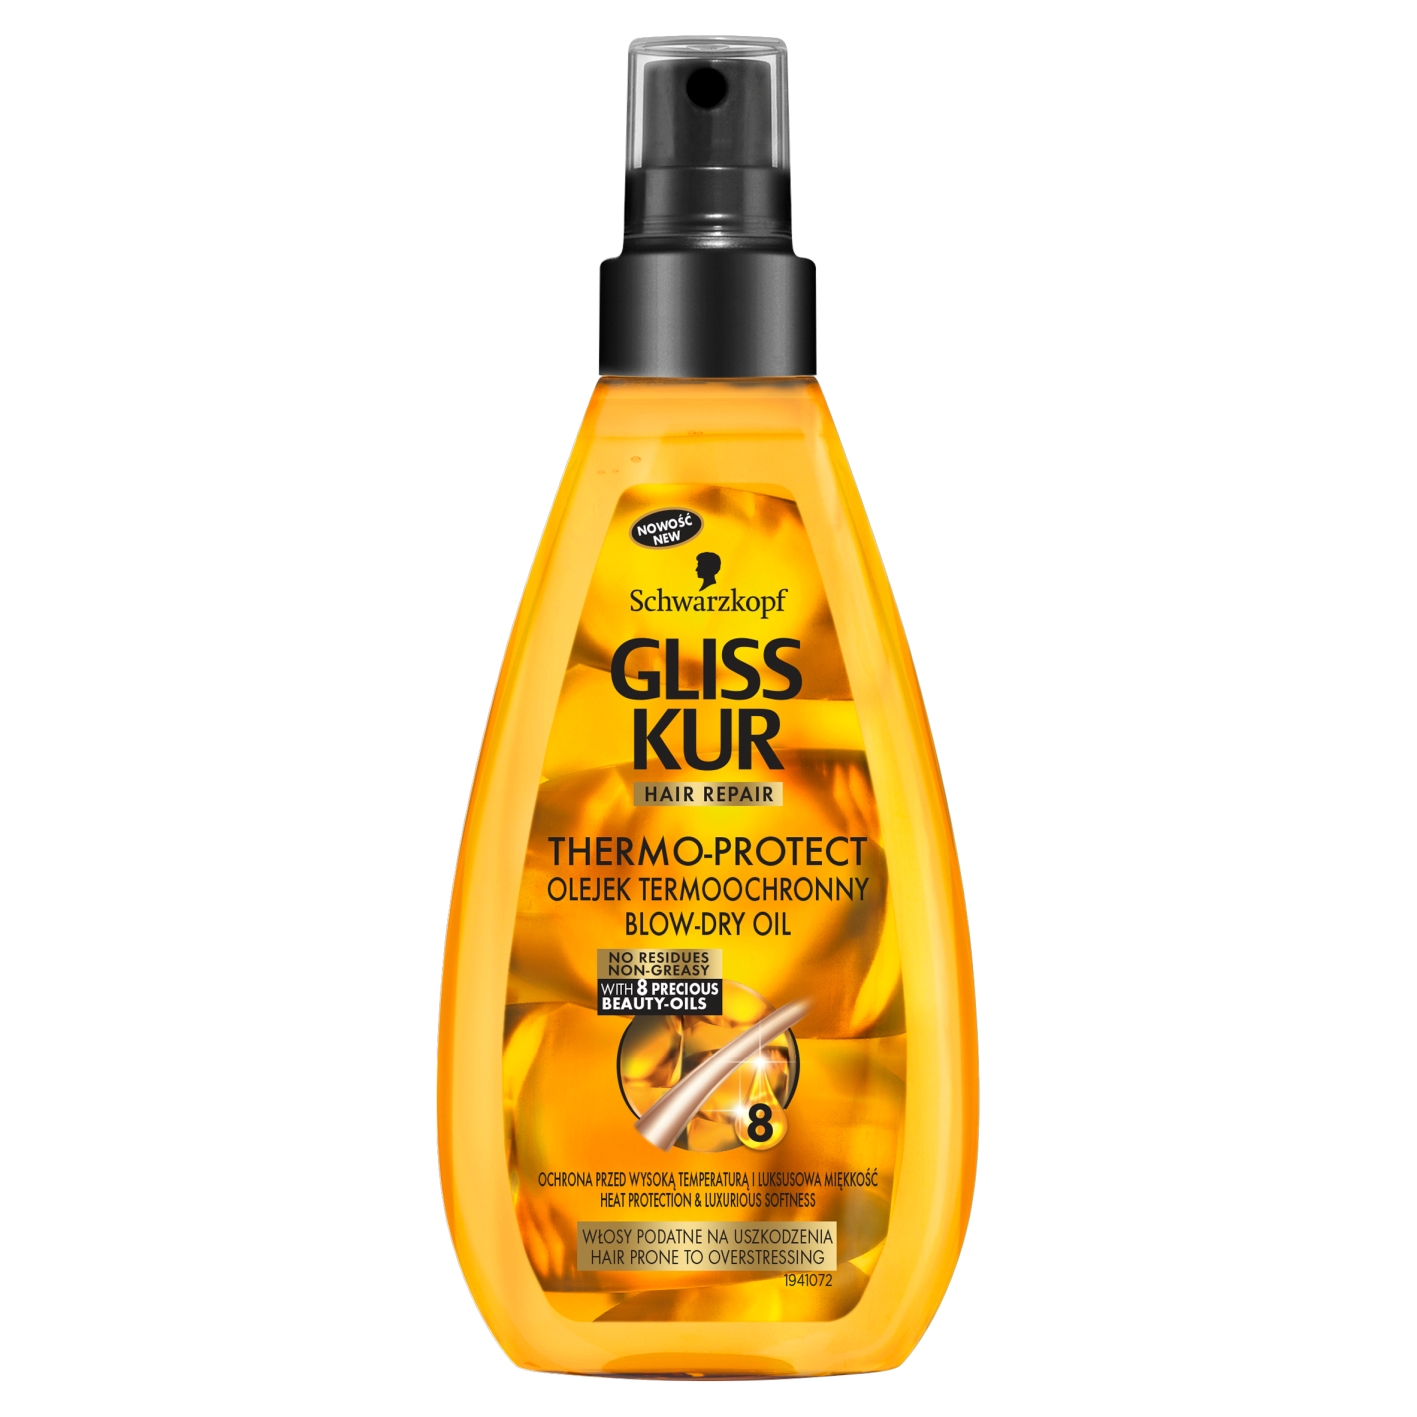 gliss kurthermo-protecttermoochronny olejek do włosów